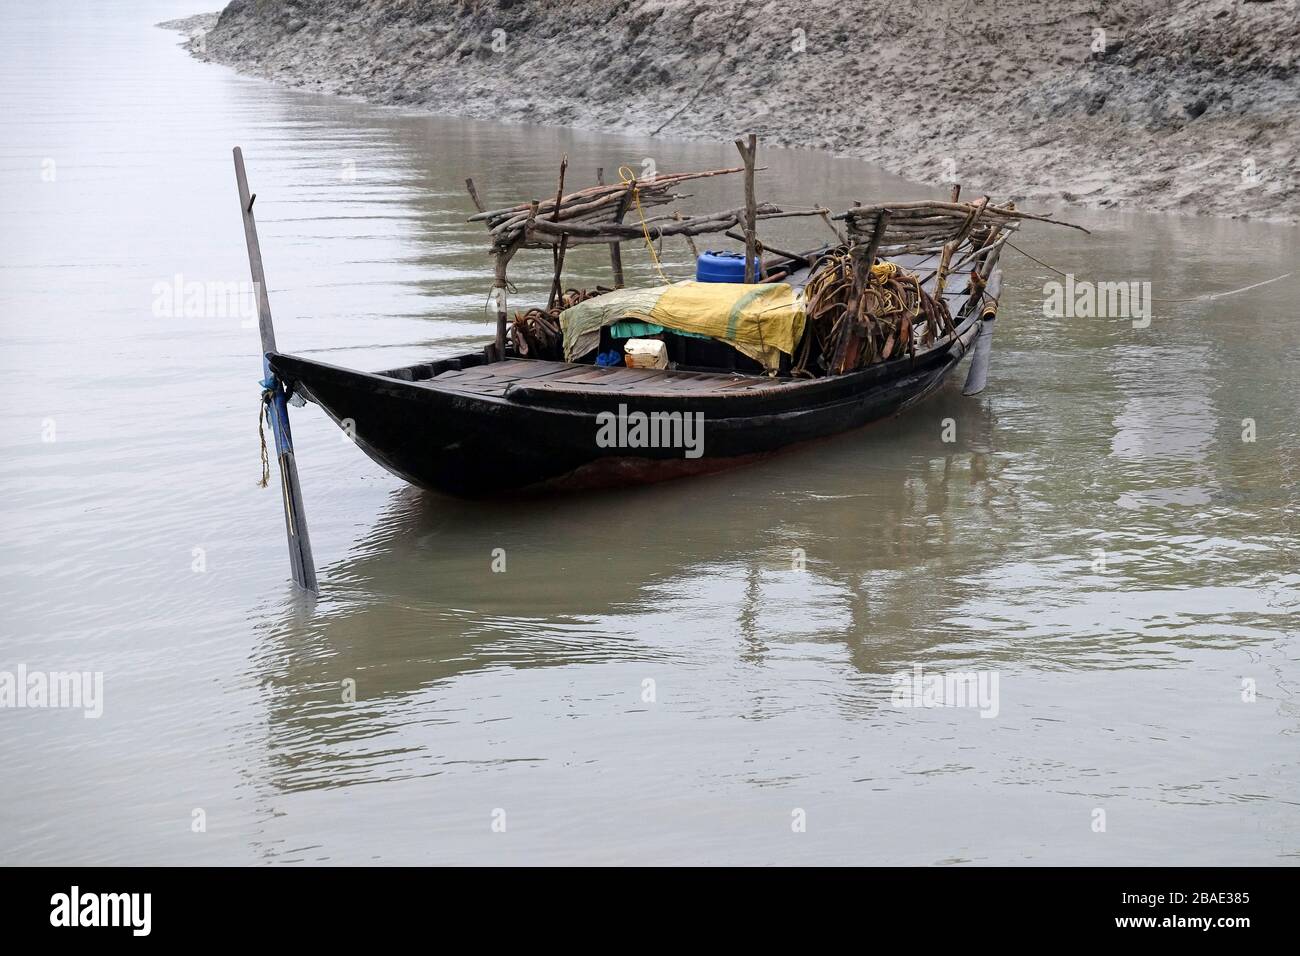 Bateau à ramer dans les zones marécageuses des Sundarbans, site classé au patrimoine mondial de l'UNESCO, Inde Banque D'Images